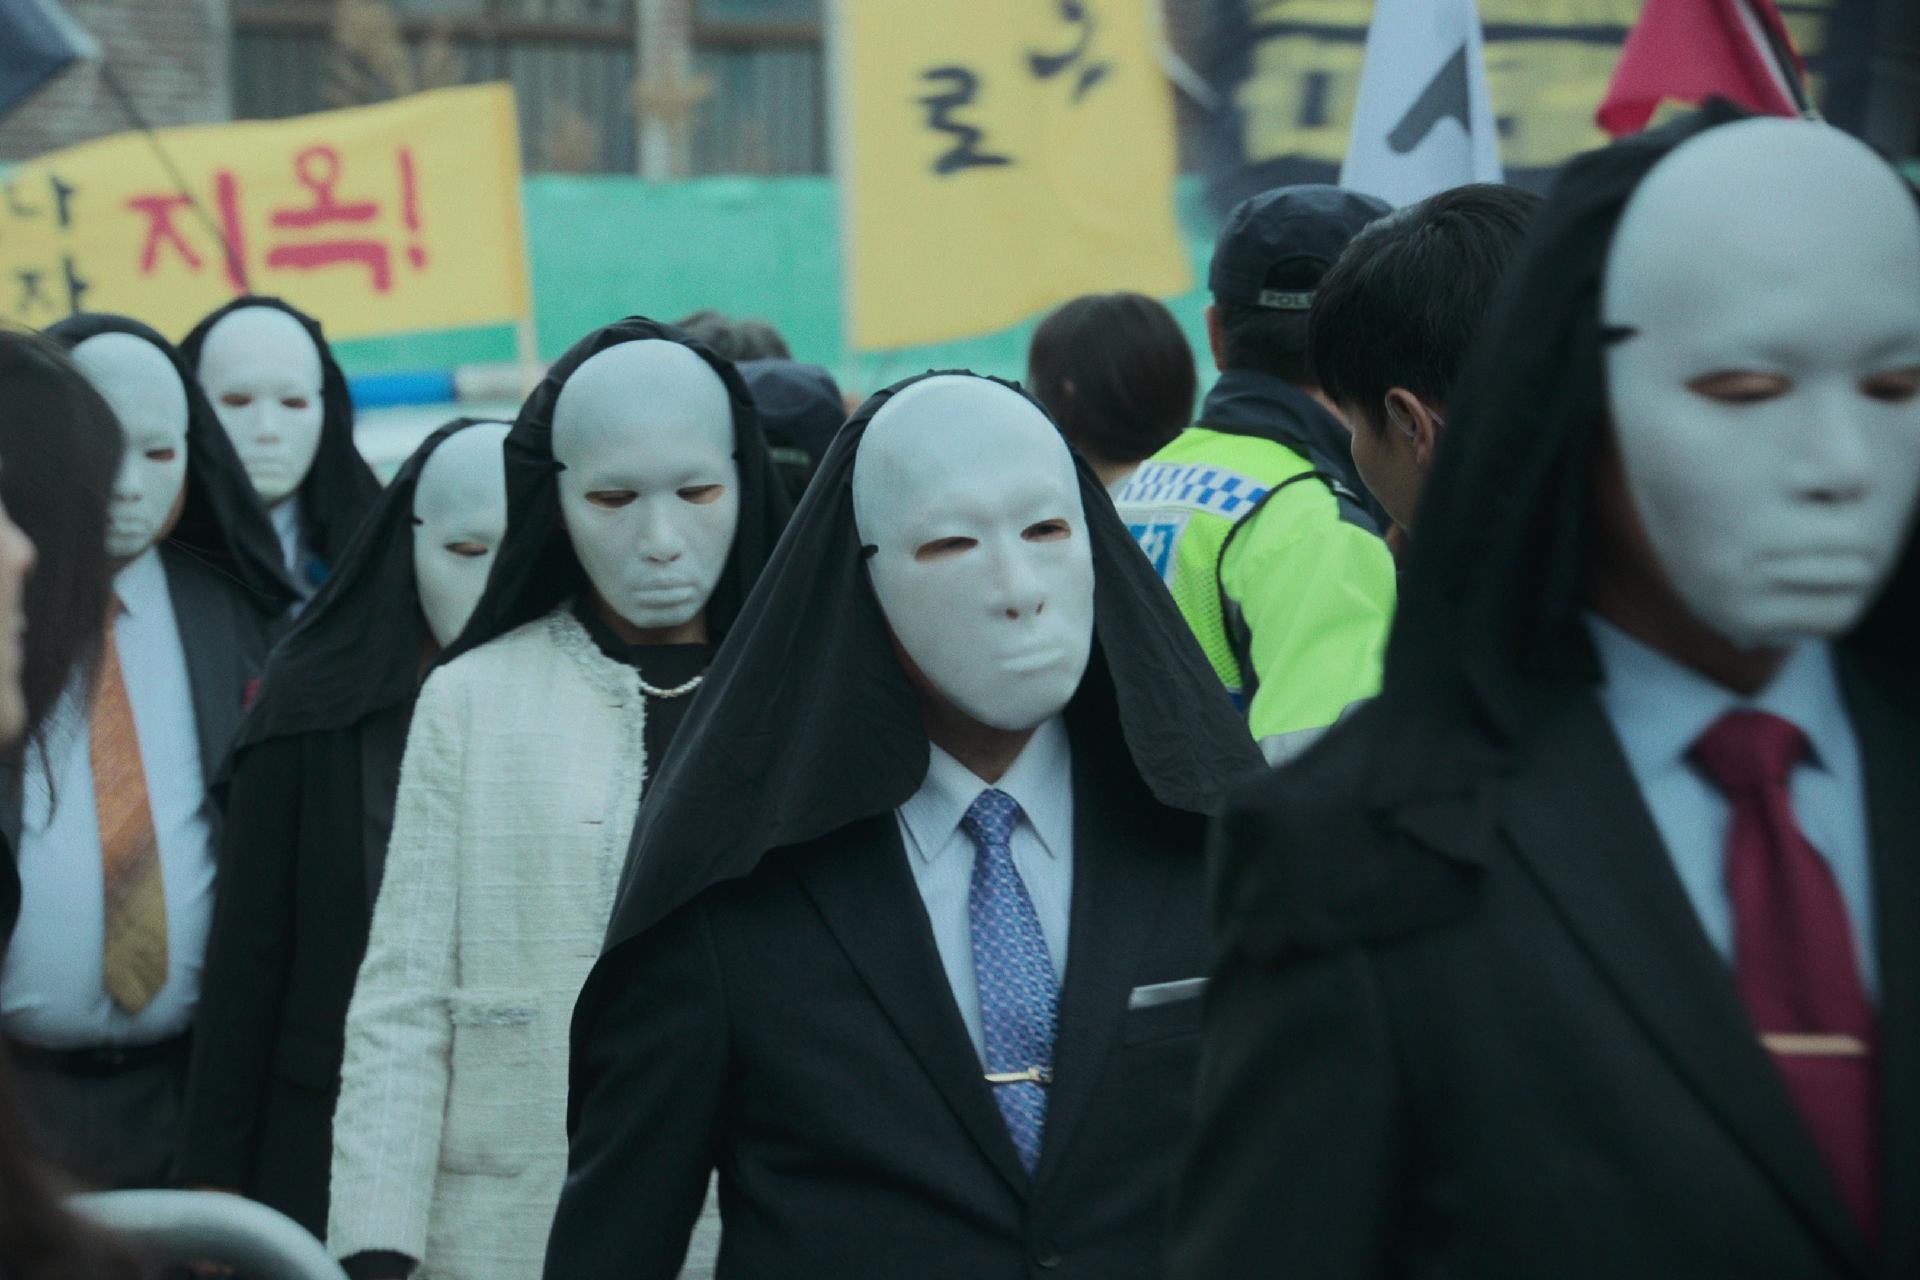 Séries de Terror: As melhores Séries Asiáticas de Terror da Netflix